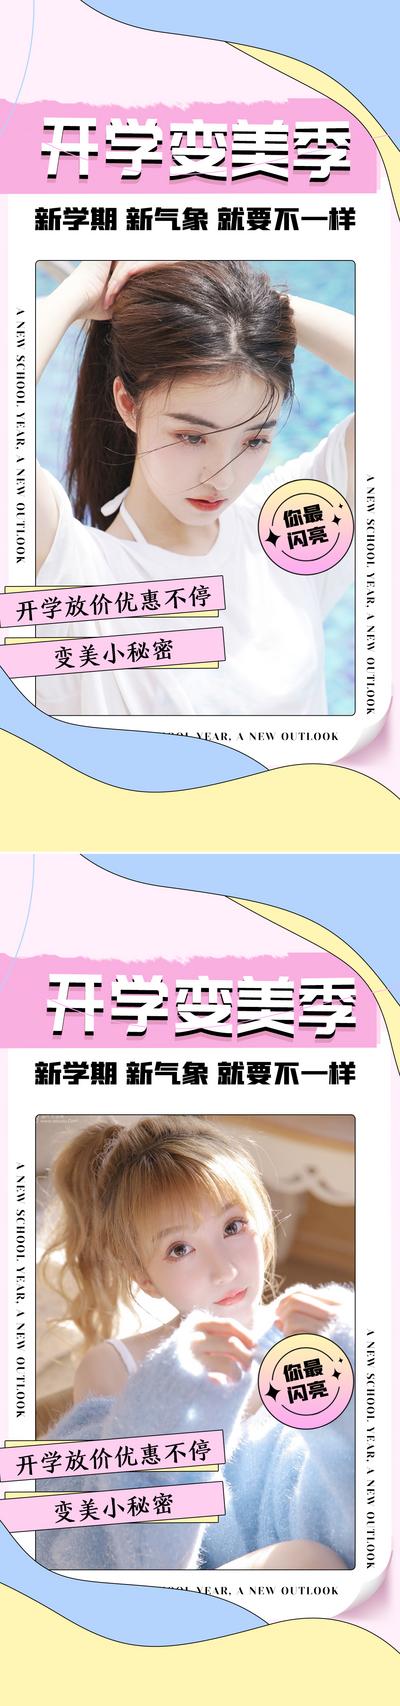 【南门网】广告 海报 医美 人物 青春 女神 开学季 